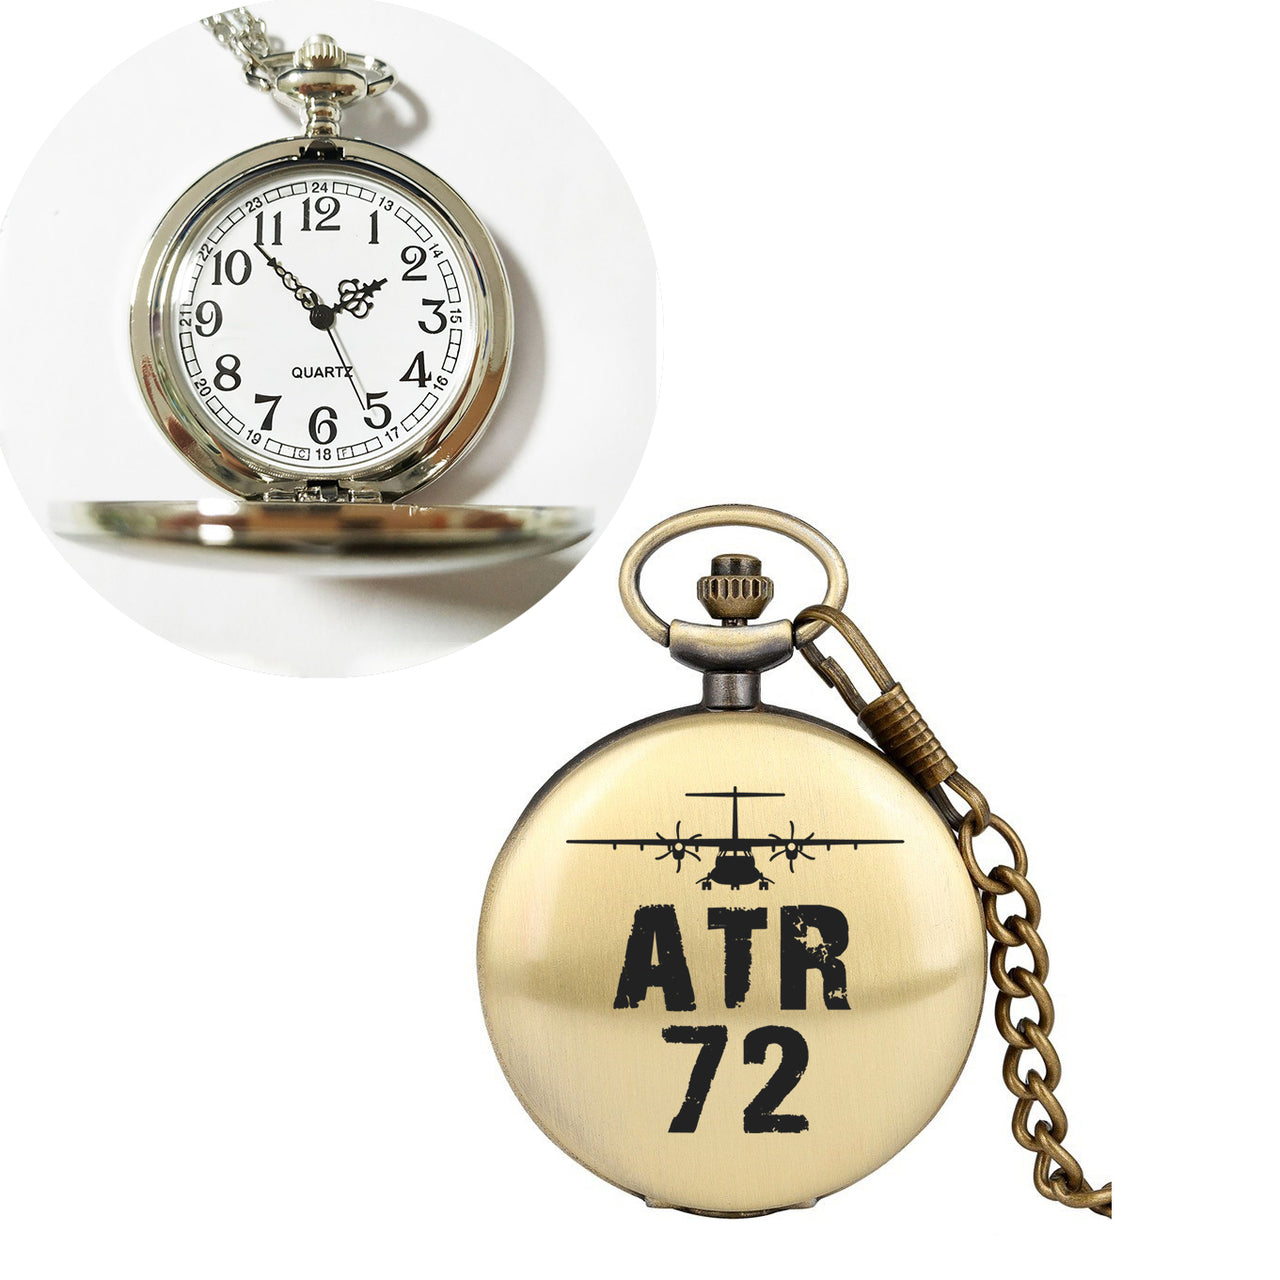 ATR-72 & Plane Designed Pocket Watches